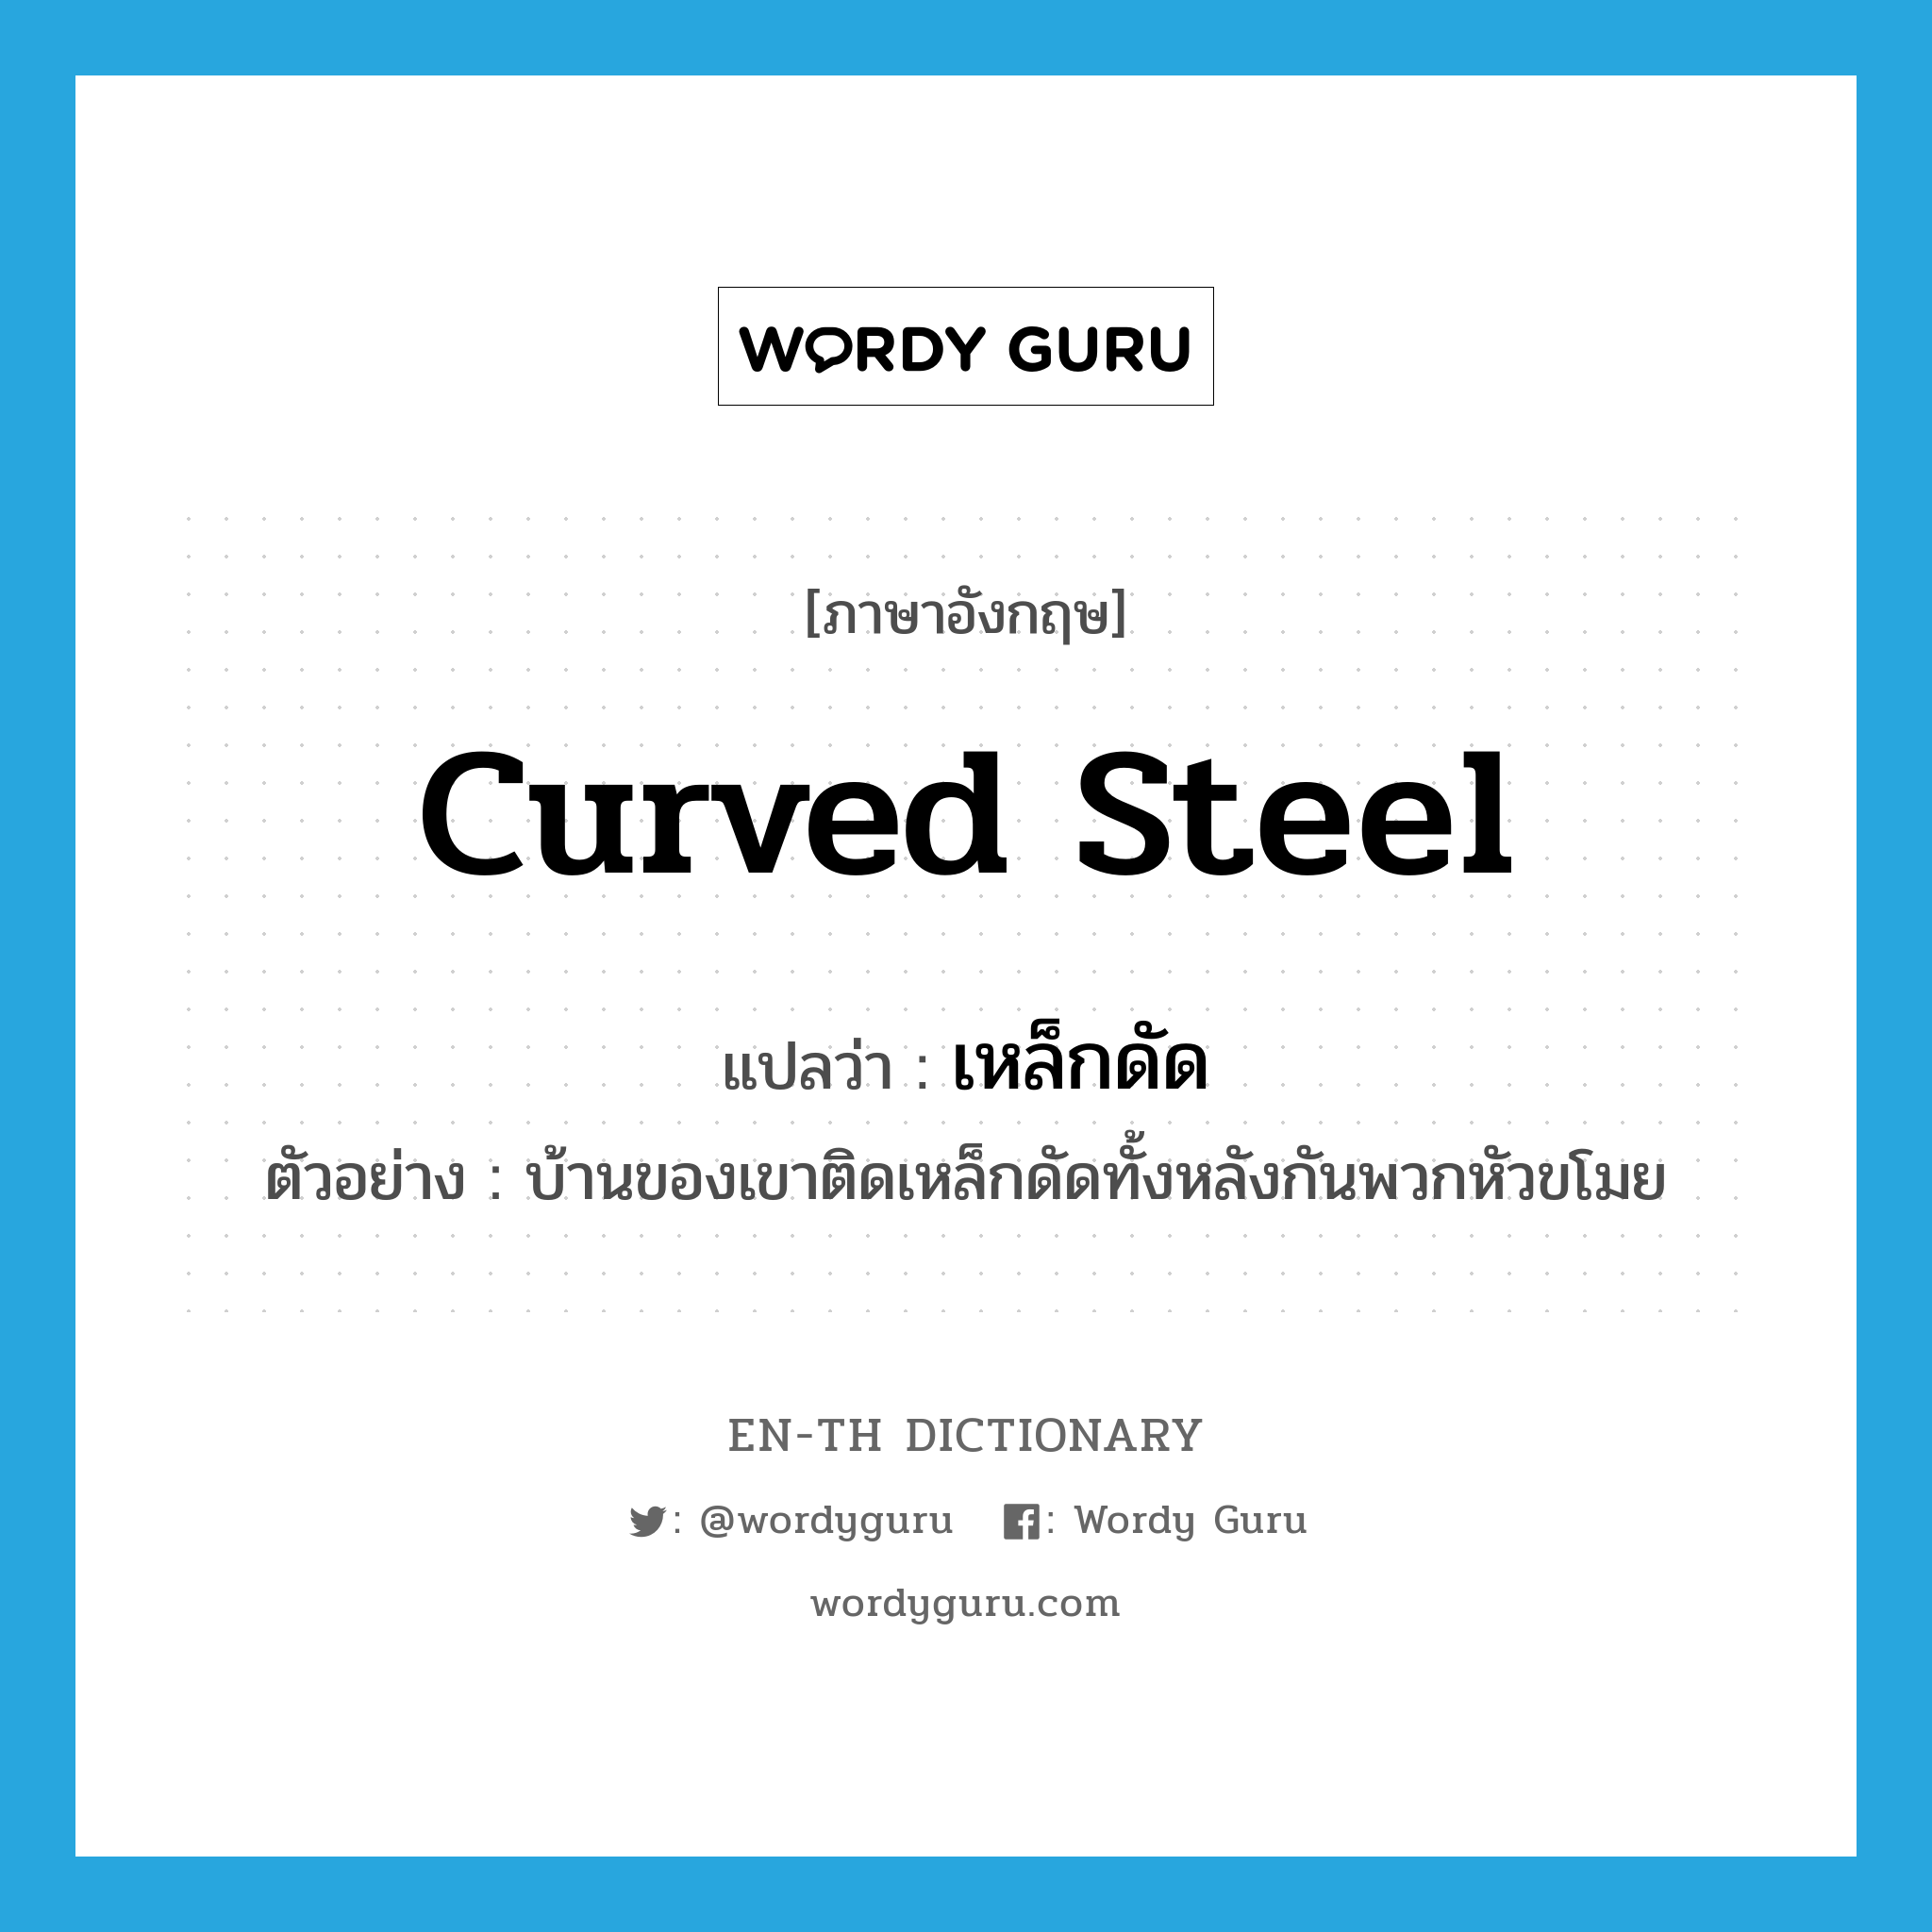 curved steel แปลว่า?, คำศัพท์ภาษาอังกฤษ curved steel แปลว่า เหล็กดัด ประเภท N ตัวอย่าง บ้านของเขาติดเหล็กดัดทั้งหลังกันพวกหัวขโมย หมวด N